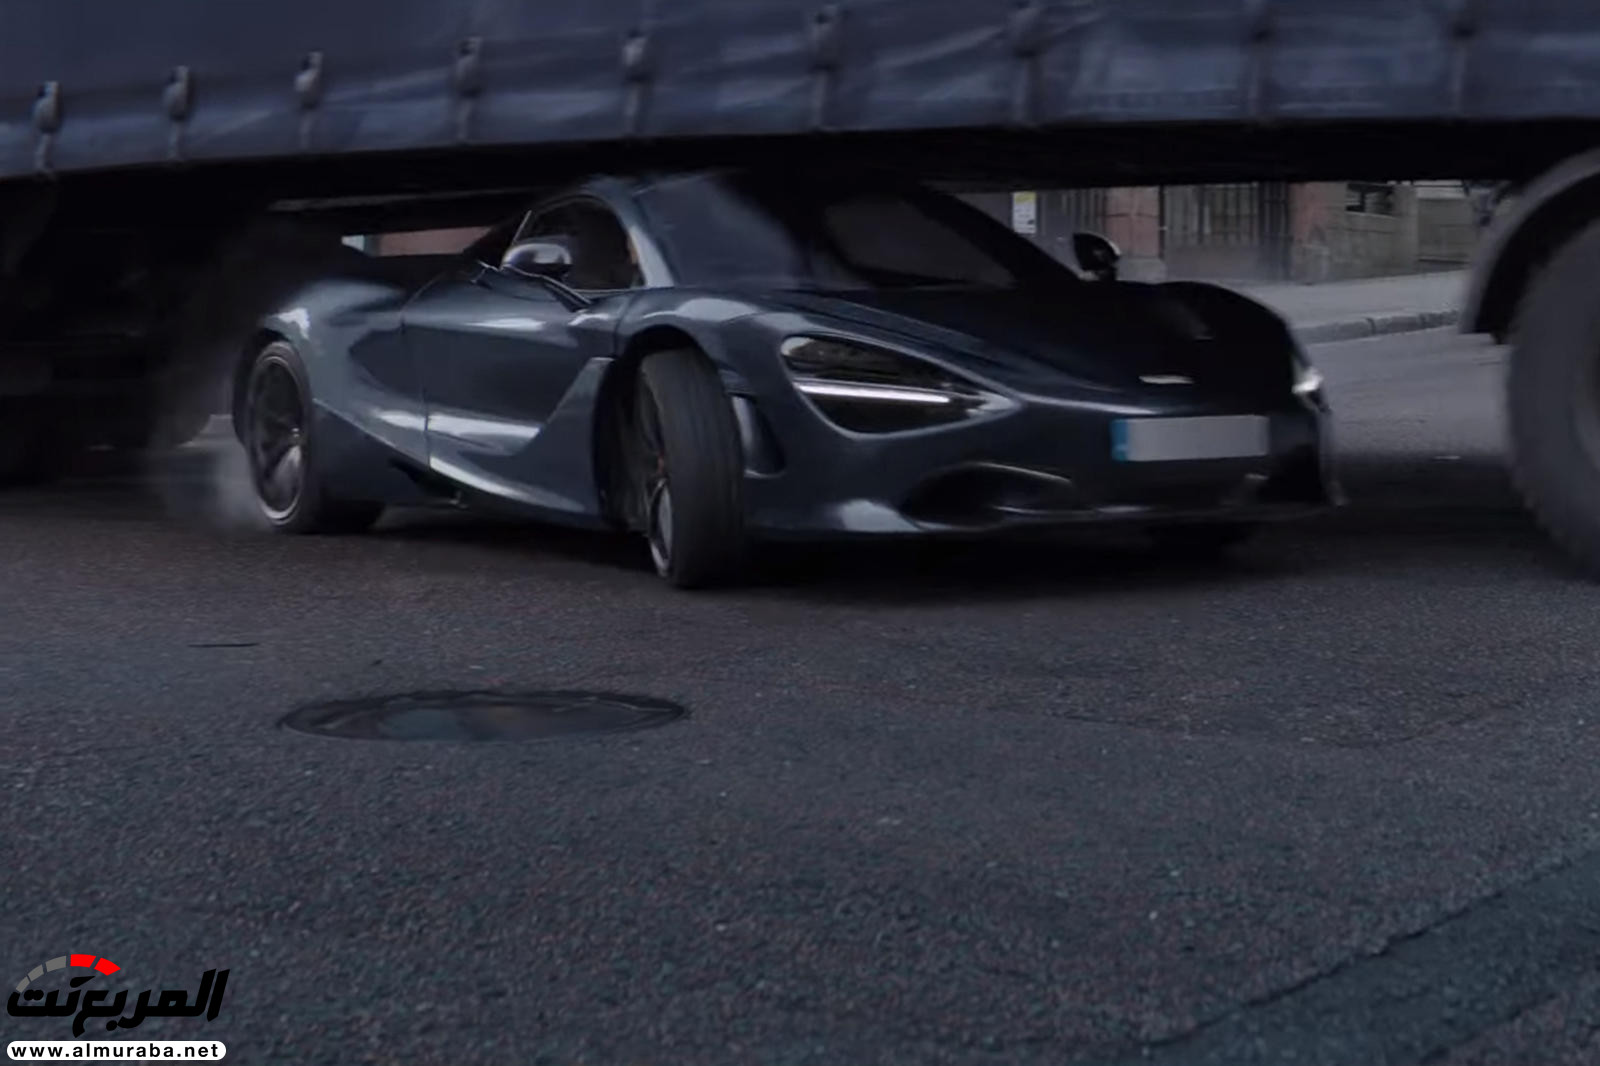 "بالفيديو والصور" لن تصدق مشاهد الأكشن مع السيارات في فيلم Fast & Furious: Hobbs & Shaw 9